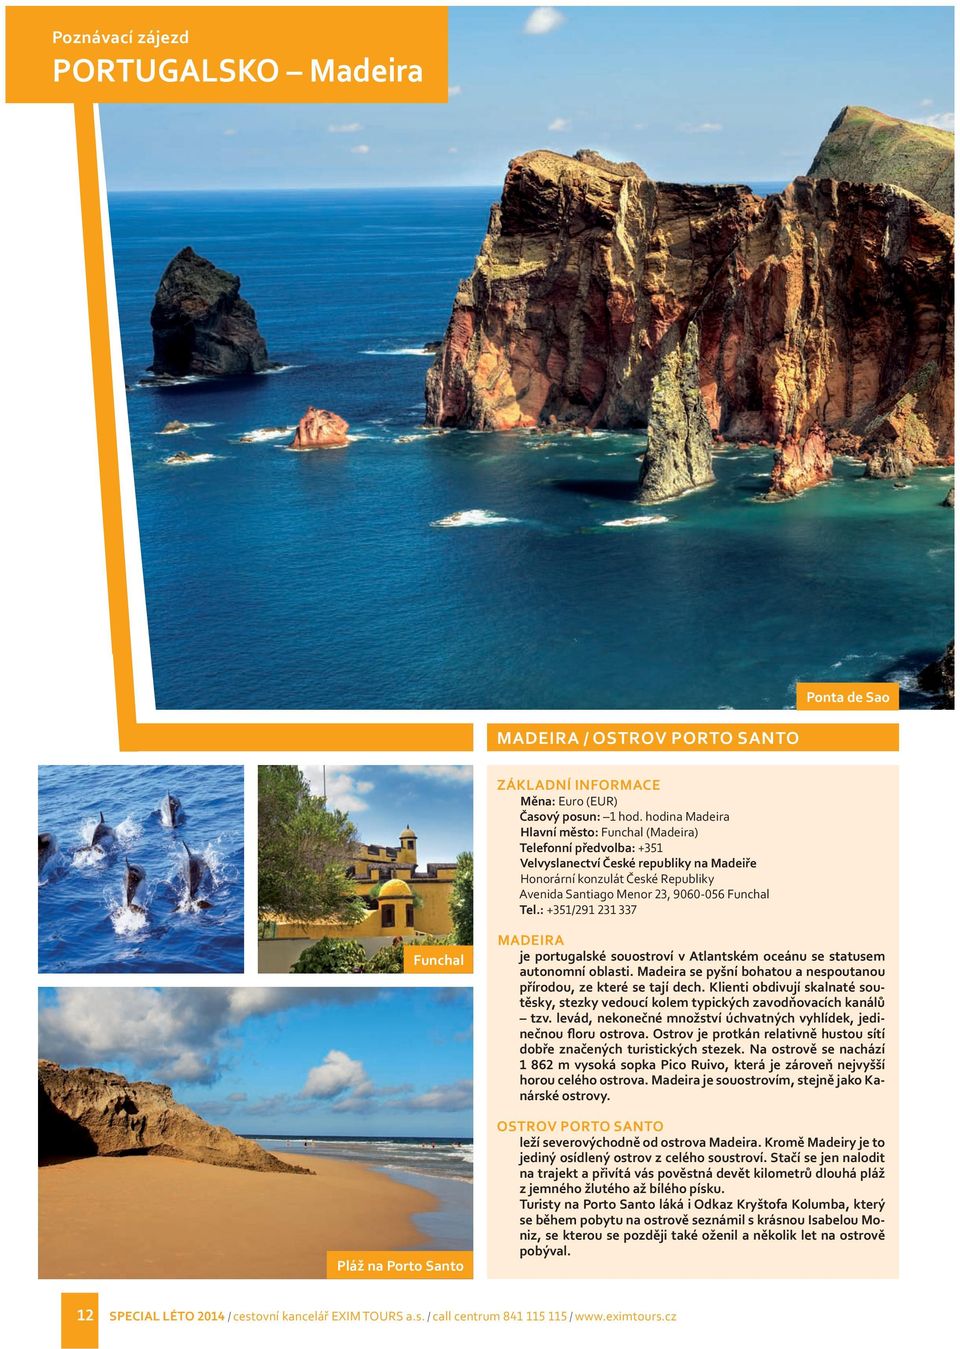 : +351/291 231 337 Funchal Pláž na Porto Santo MADEIRA je portugalské souostroví v Atlantském oceánu se statusem autonomní oblasti.